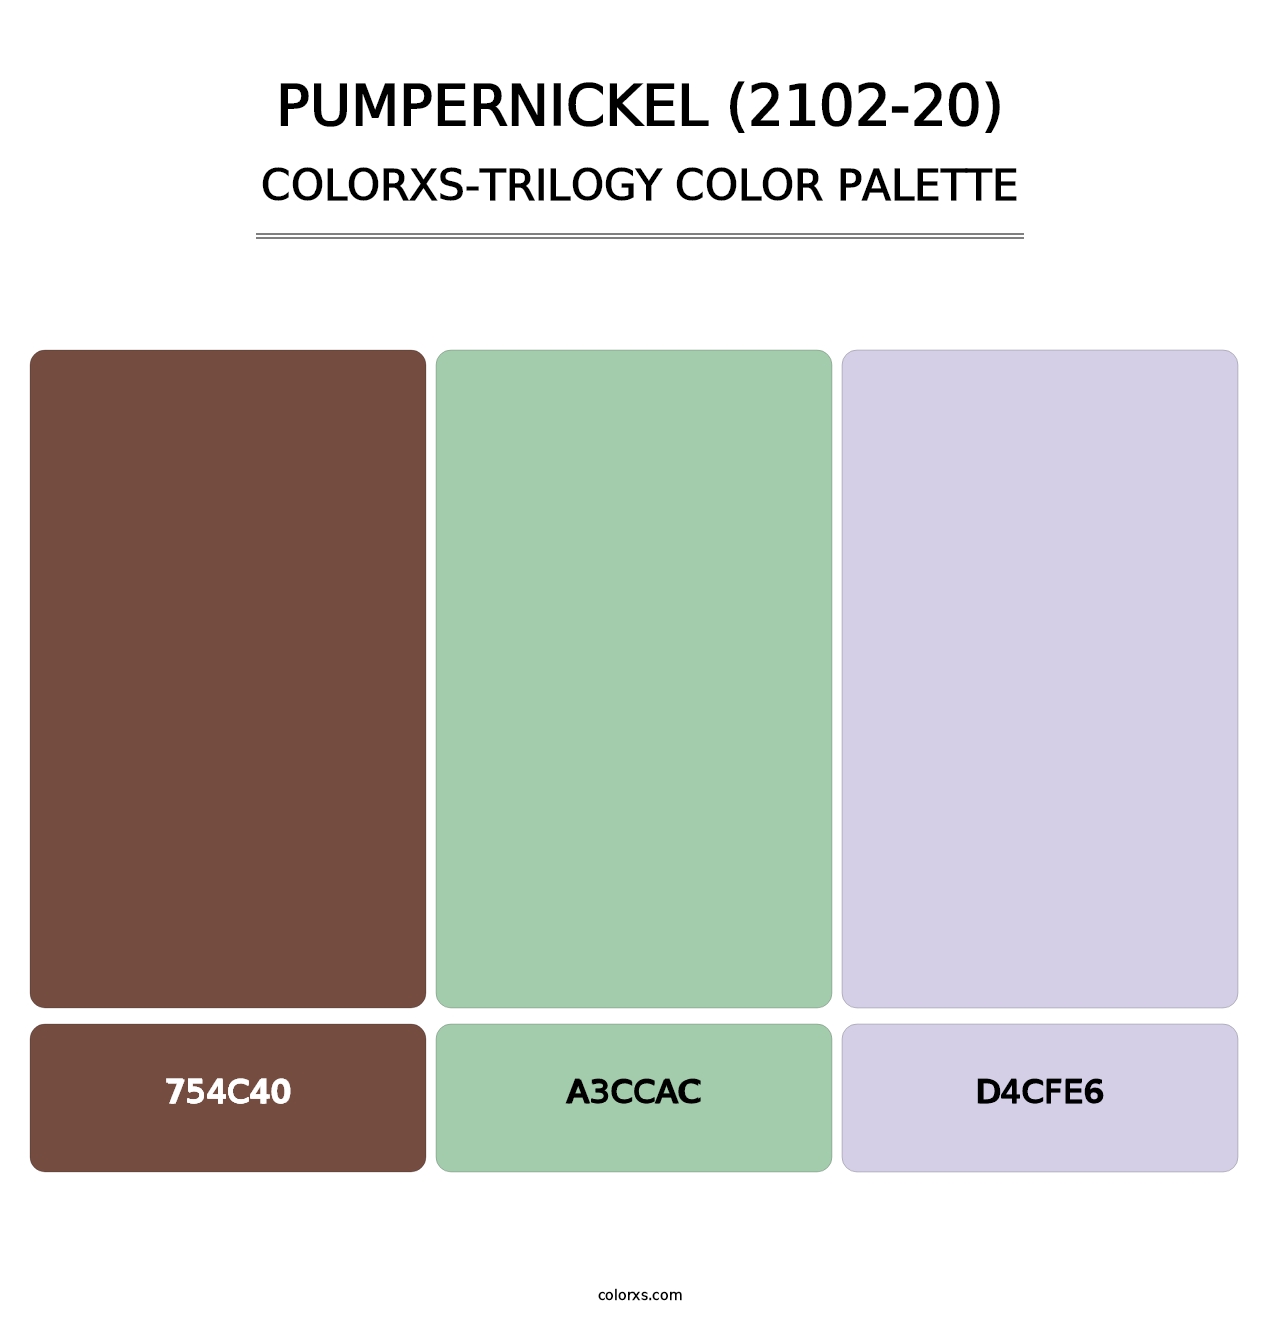 Pumpernickel (2102-20) - Colorxs Trilogy Palette